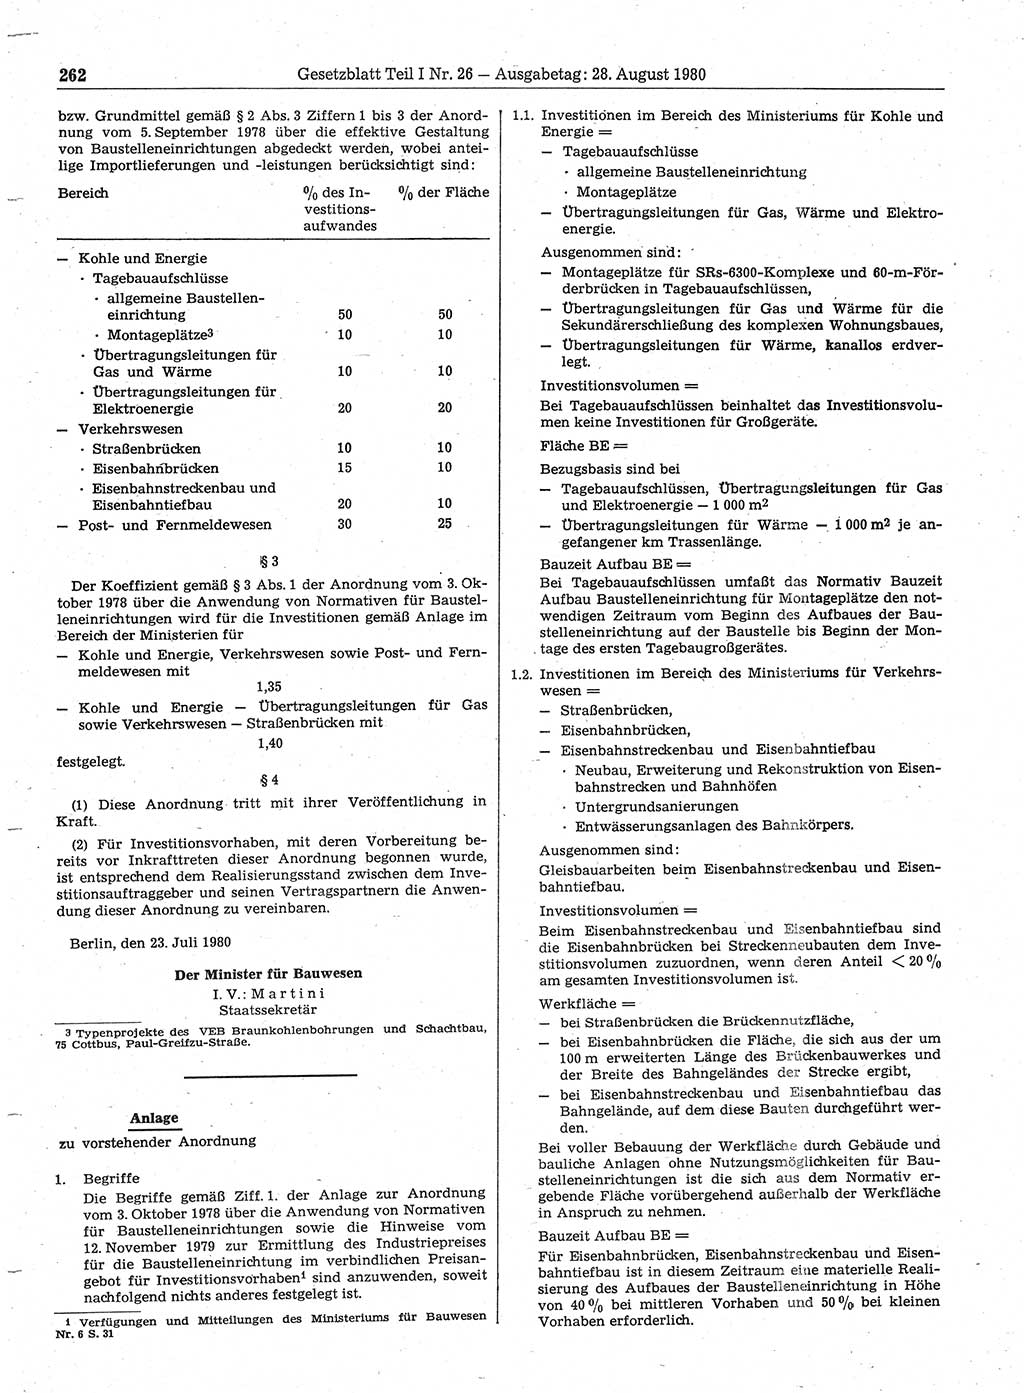 Gesetzblatt (GBl.) der Deutschen Demokratischen Republik (DDR) Teil Ⅰ 1980, Seite 262 (GBl. DDR Ⅰ 1980, S. 262)